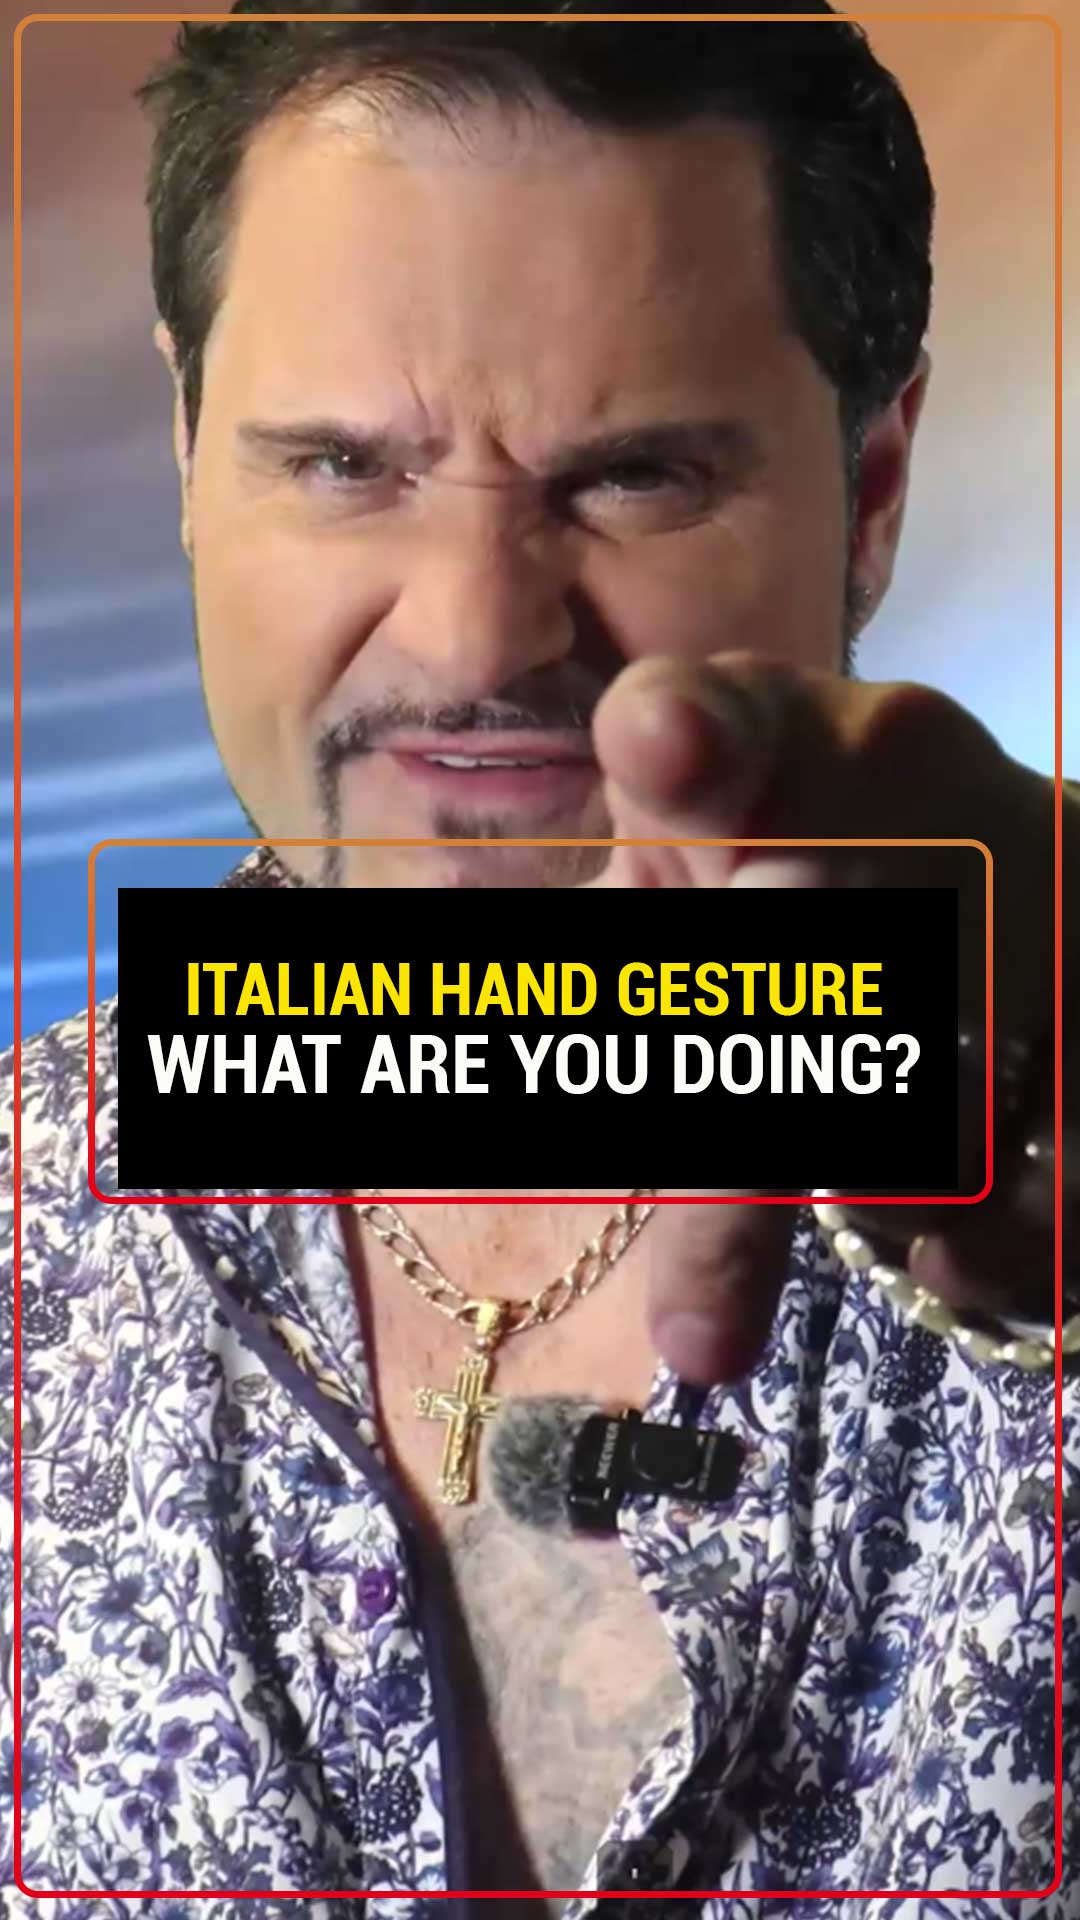 Итальянские жесты руками

Это означает «что ты делаешь»